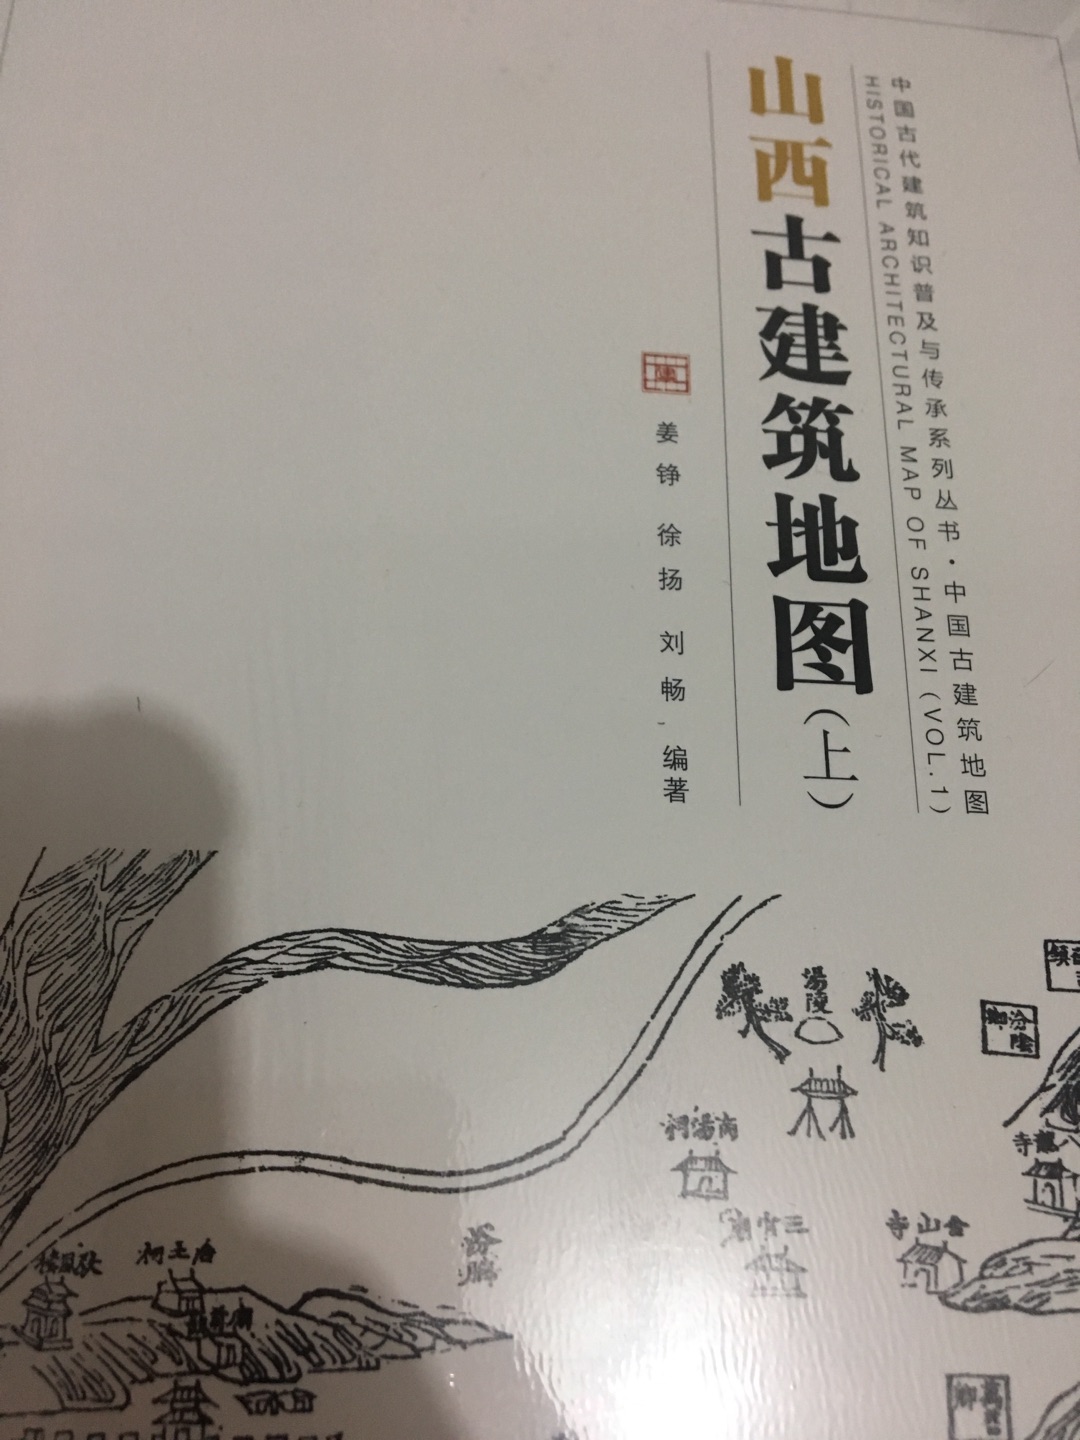 书收到了，物流很快，包装完整。山西作为中国古建筑最多的省份，想要了解山西都是古建筑。这本书可以买来看看，希望有所得。